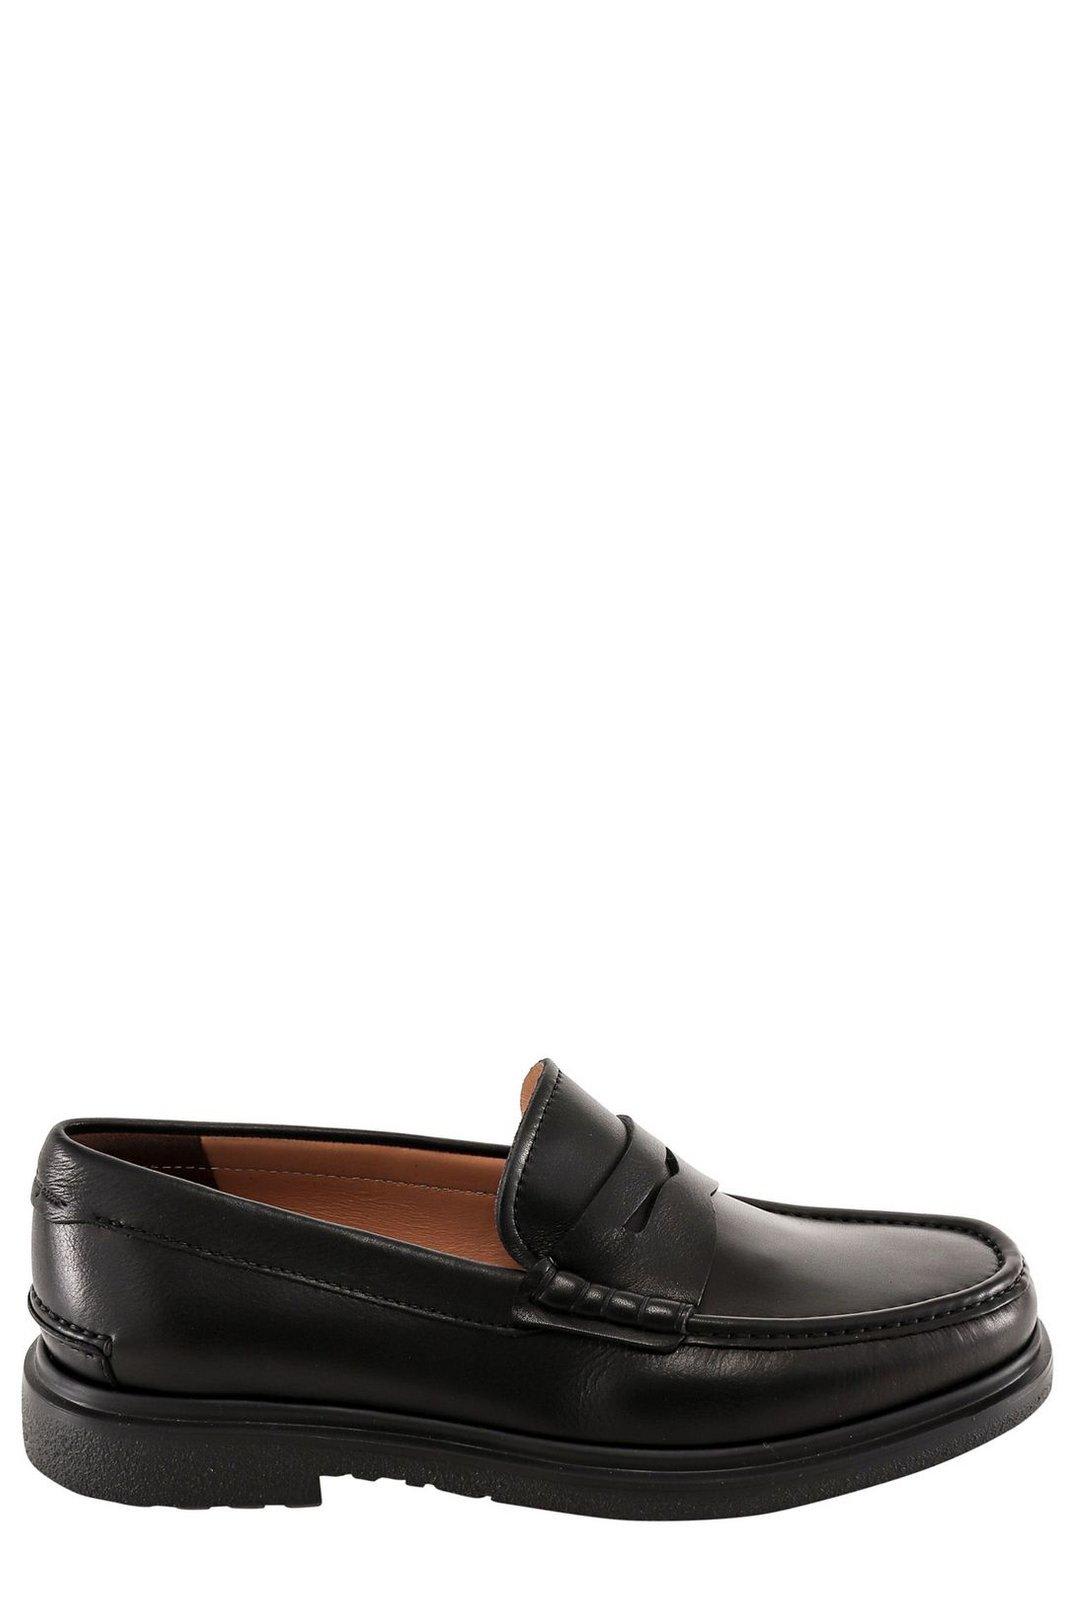 Shop Ferragamo Slip-on Penny Loafers In Black